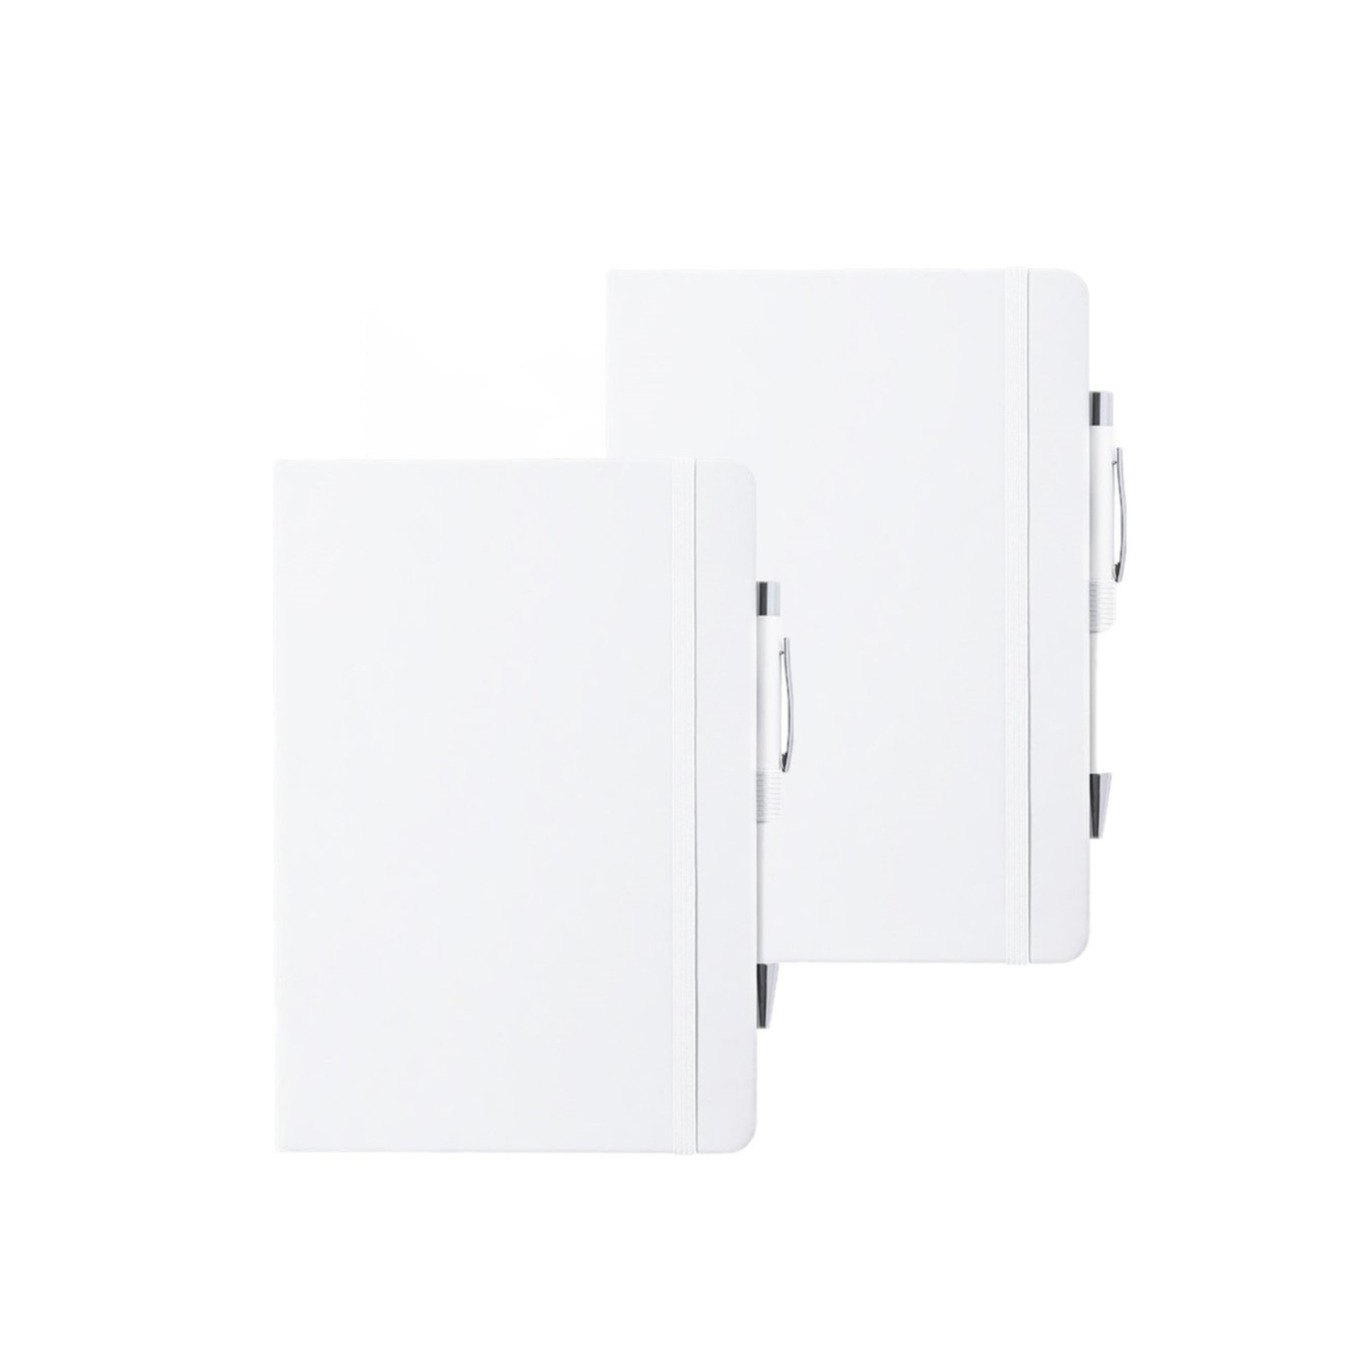 Set van 4x stuks luxe notitieboekje gelinieerd wit met elastiek en pen A5 formaat